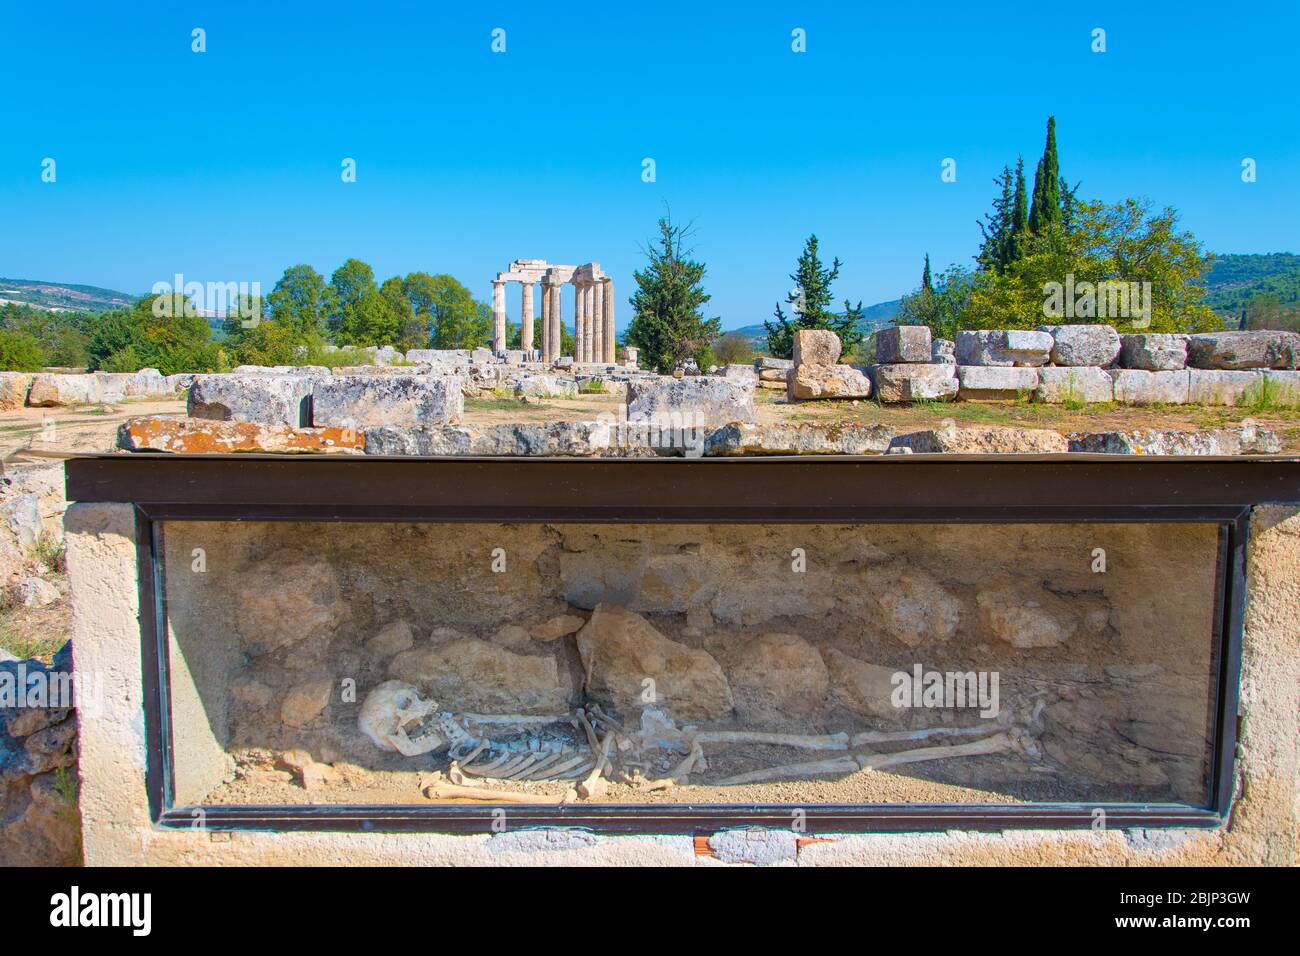 Sito archeologico di Nemea in Grecia. Uno scheletro di una donna di età superiore ai 2000 anni è stato trovato in uno scavo nella zona Foto Stock